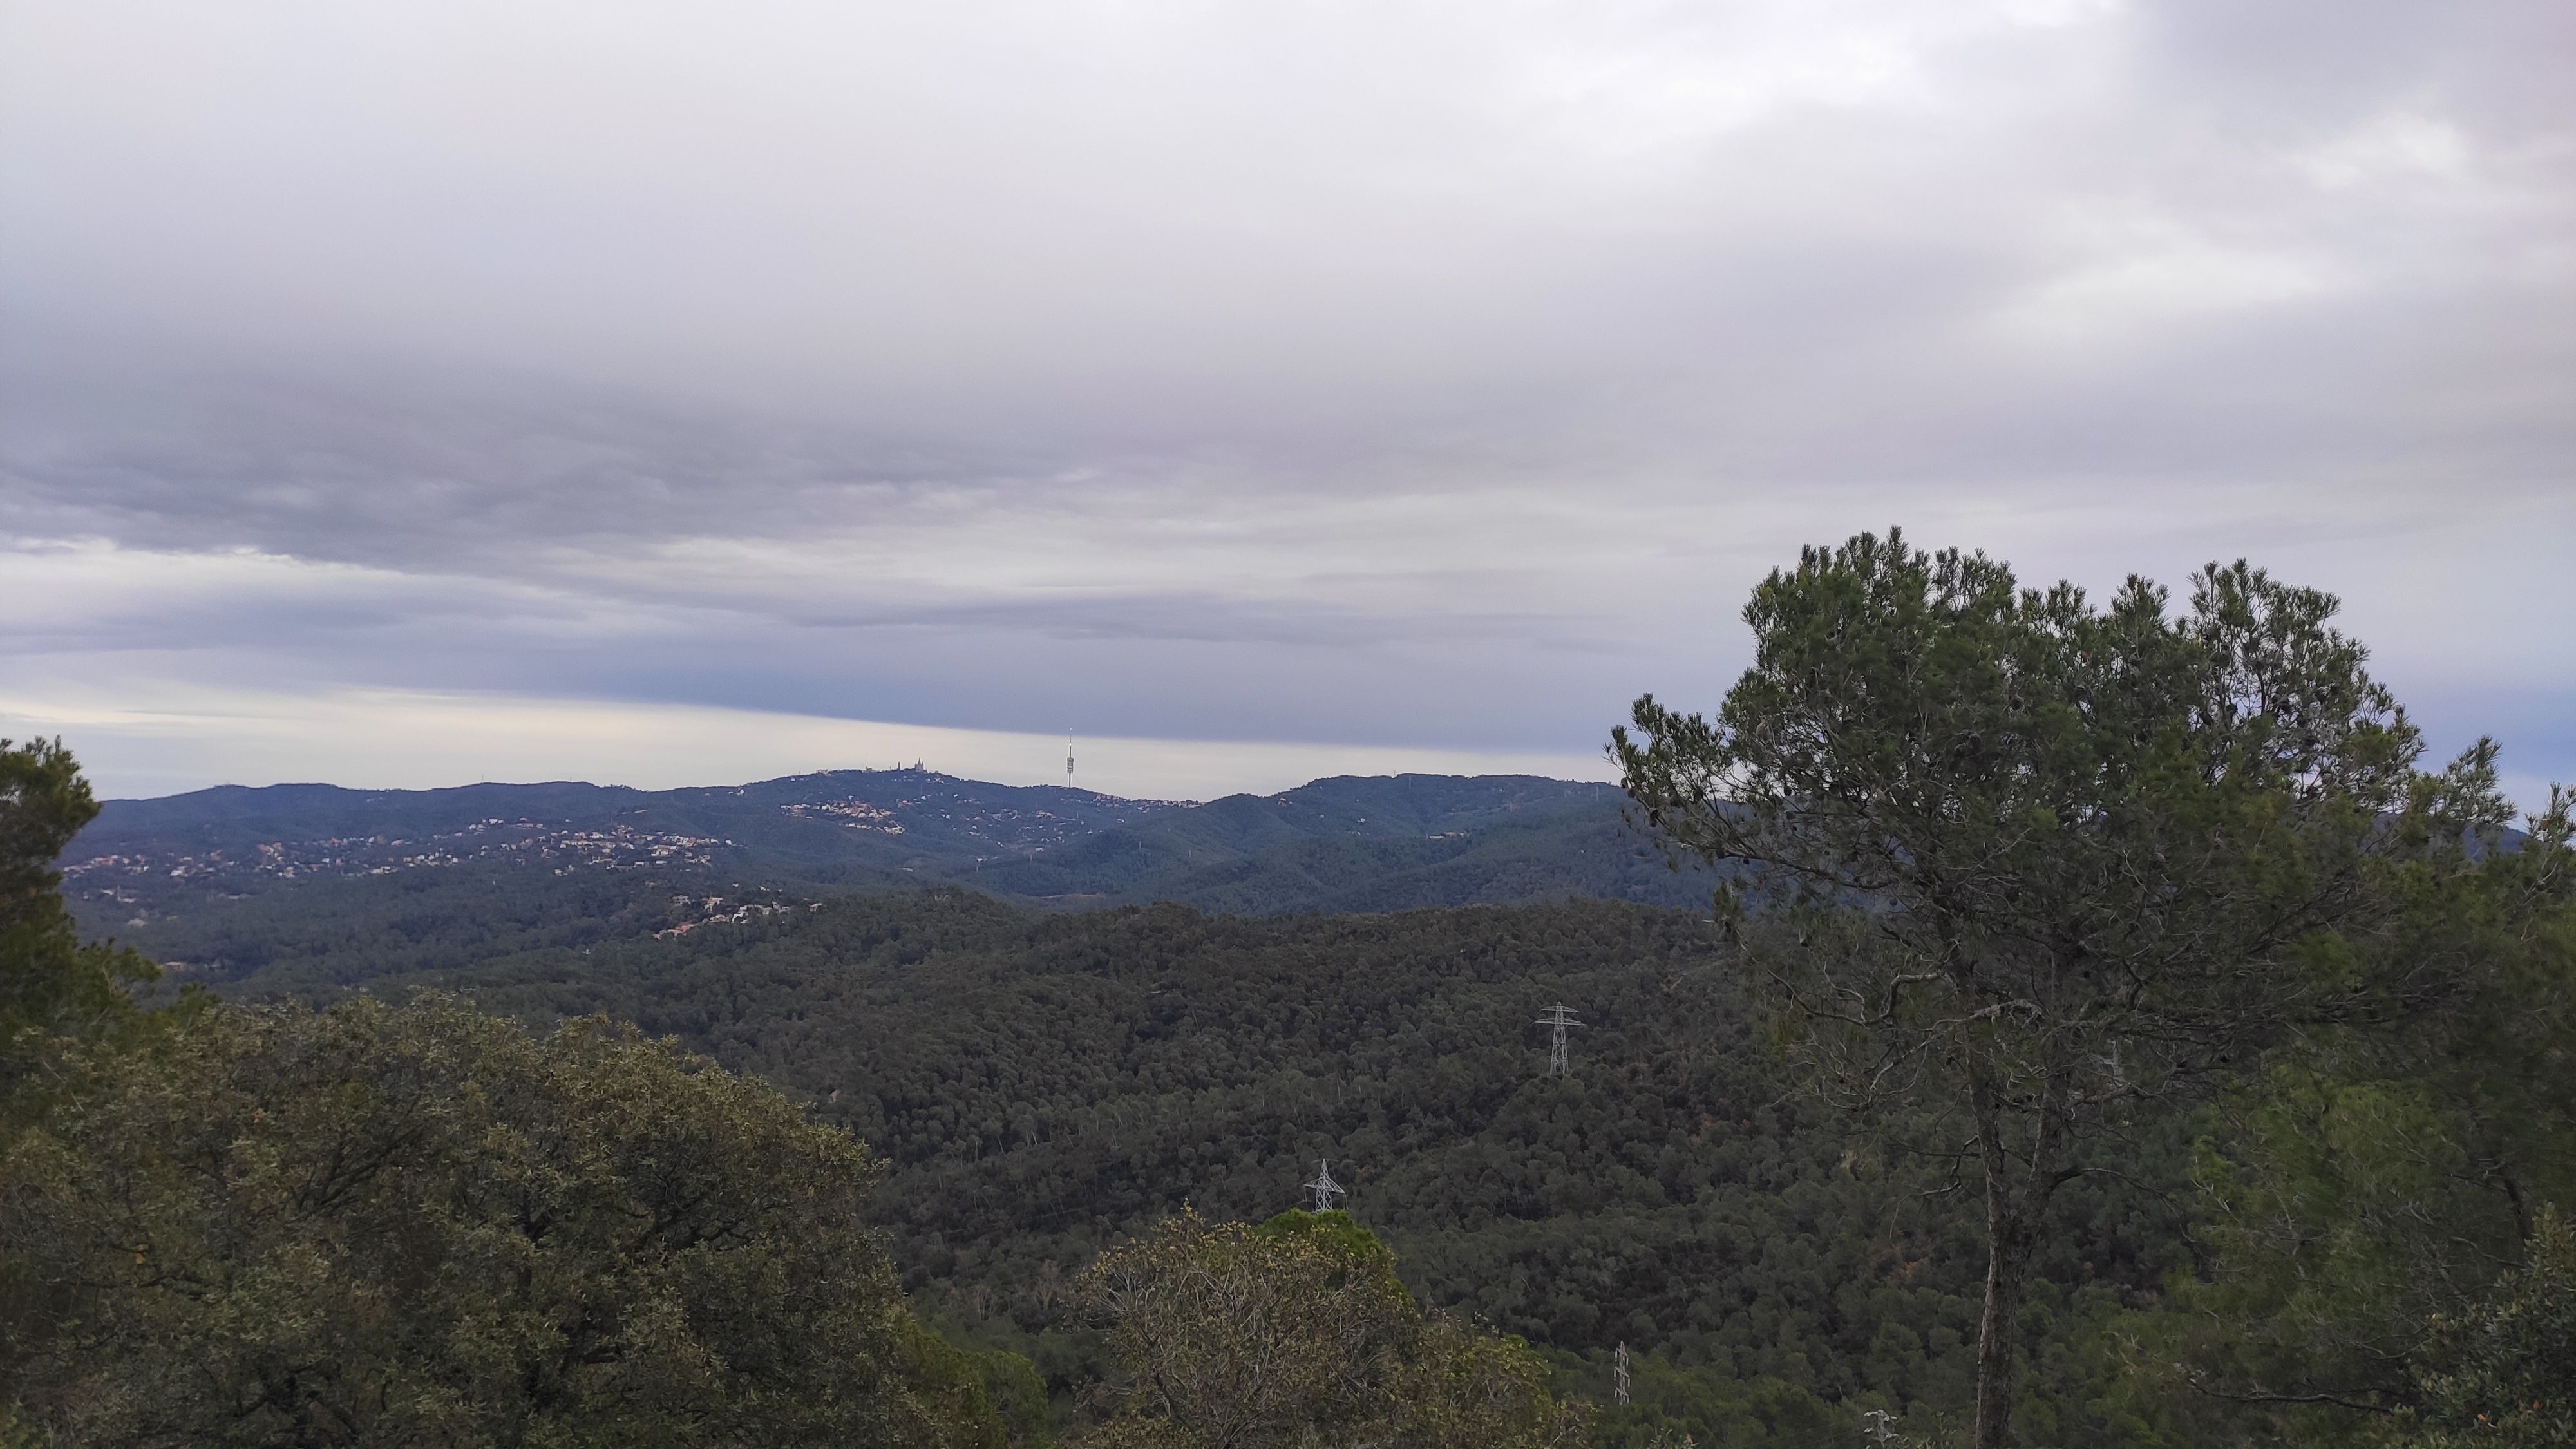 Des del cim tenim vistes del Vallès Occidental i el Baix Llobregat. FOTO: Redacció